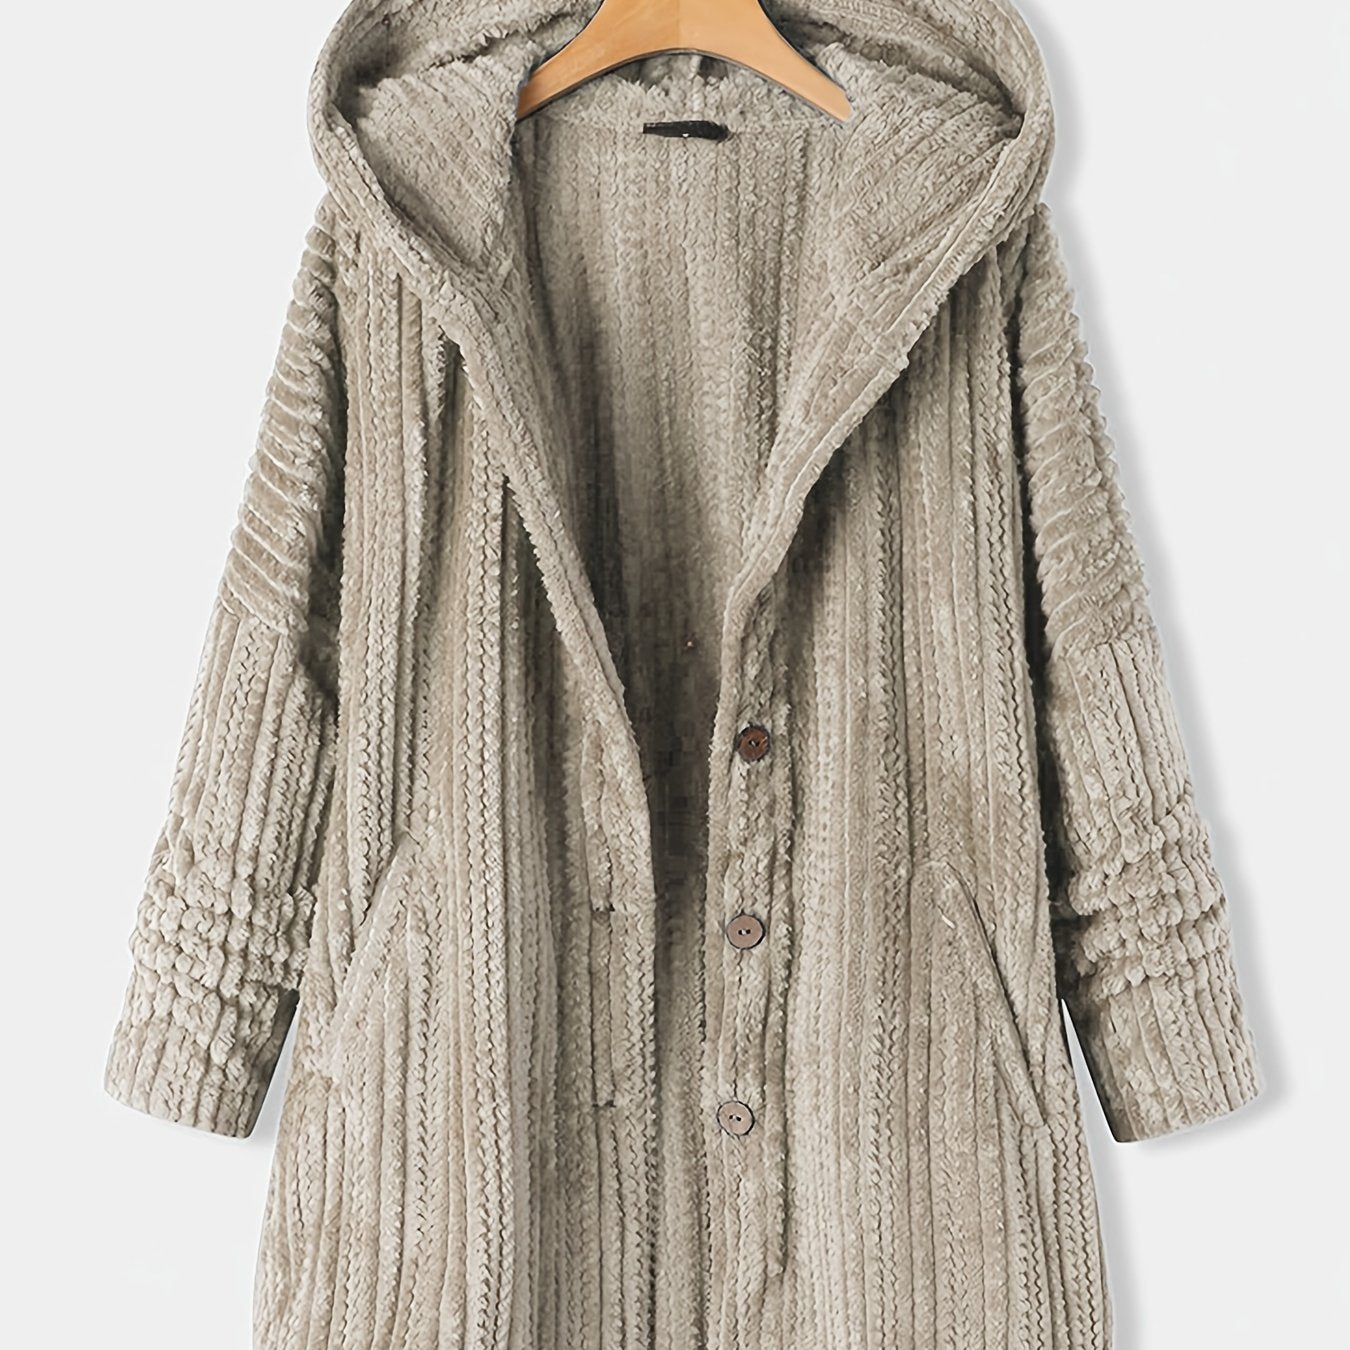 Women's Winter Coat, Warm Coat, Thicken Hooded Coat,  Women's Clothing